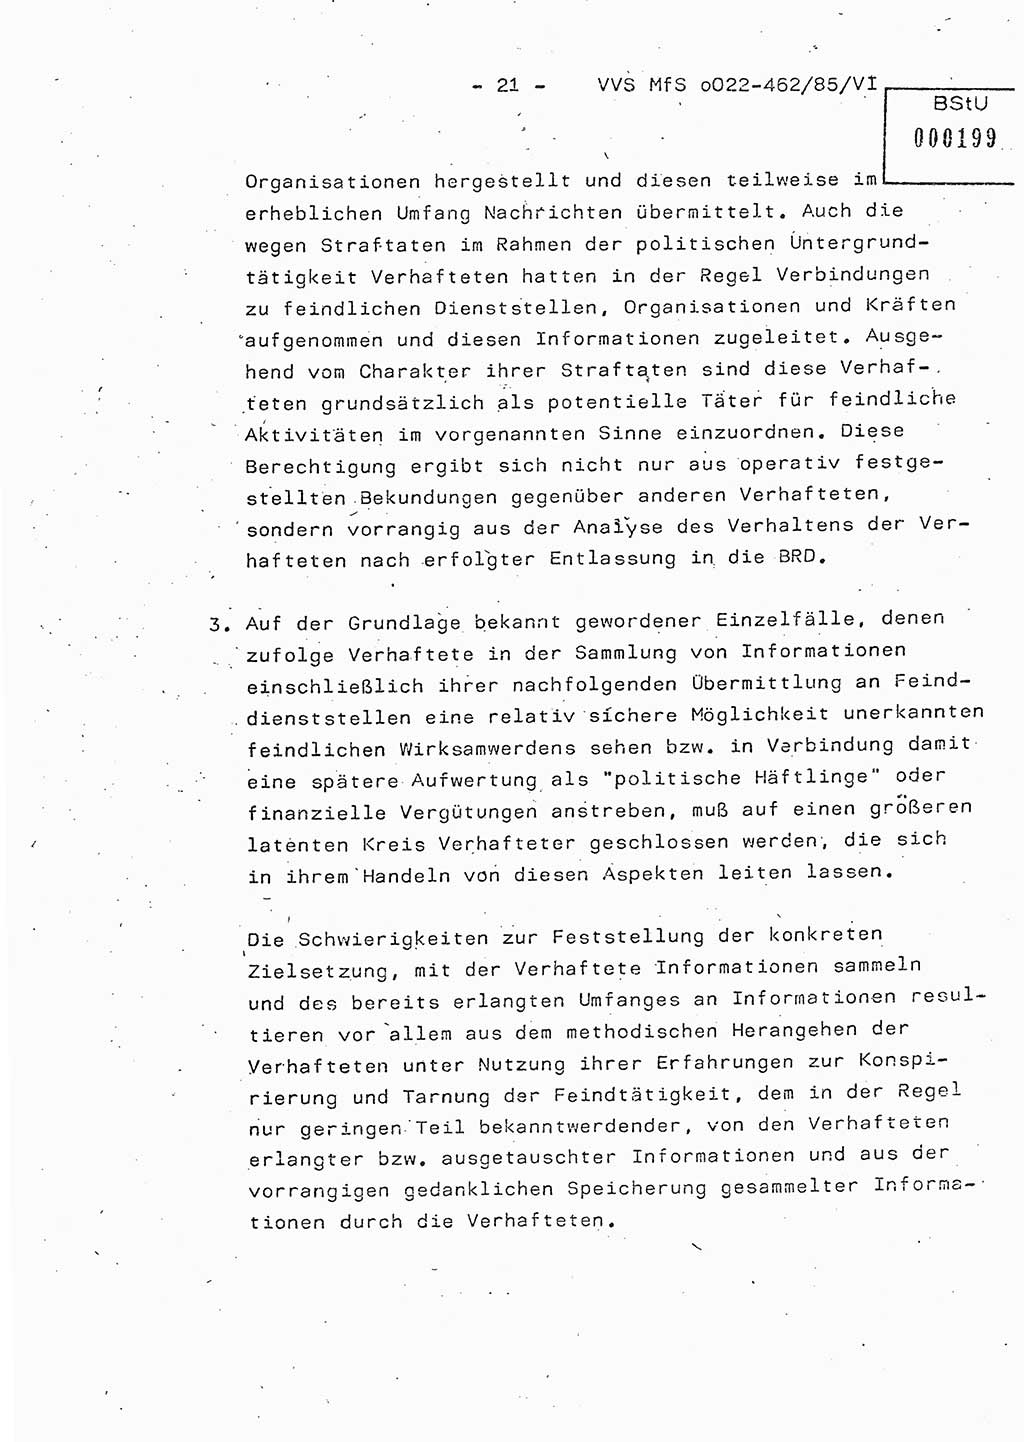 Der Untersuchungshaftvollzug im MfS, Schulungsmaterial Teil Ⅵ, Ministerium für Staatssicherheit [Deutsche Demokratische Republik (DDR)], Abteilung (Abt.) ⅩⅣ, Vertrauliche Verschlußsache (VVS) o022-462/85/Ⅵ, Berlin 1985, Seite 21 (Sch.-Mat. Ⅵ MfS DDR Abt. ⅩⅣ VVS o022-462/85/Ⅵ 1985, S. 21)